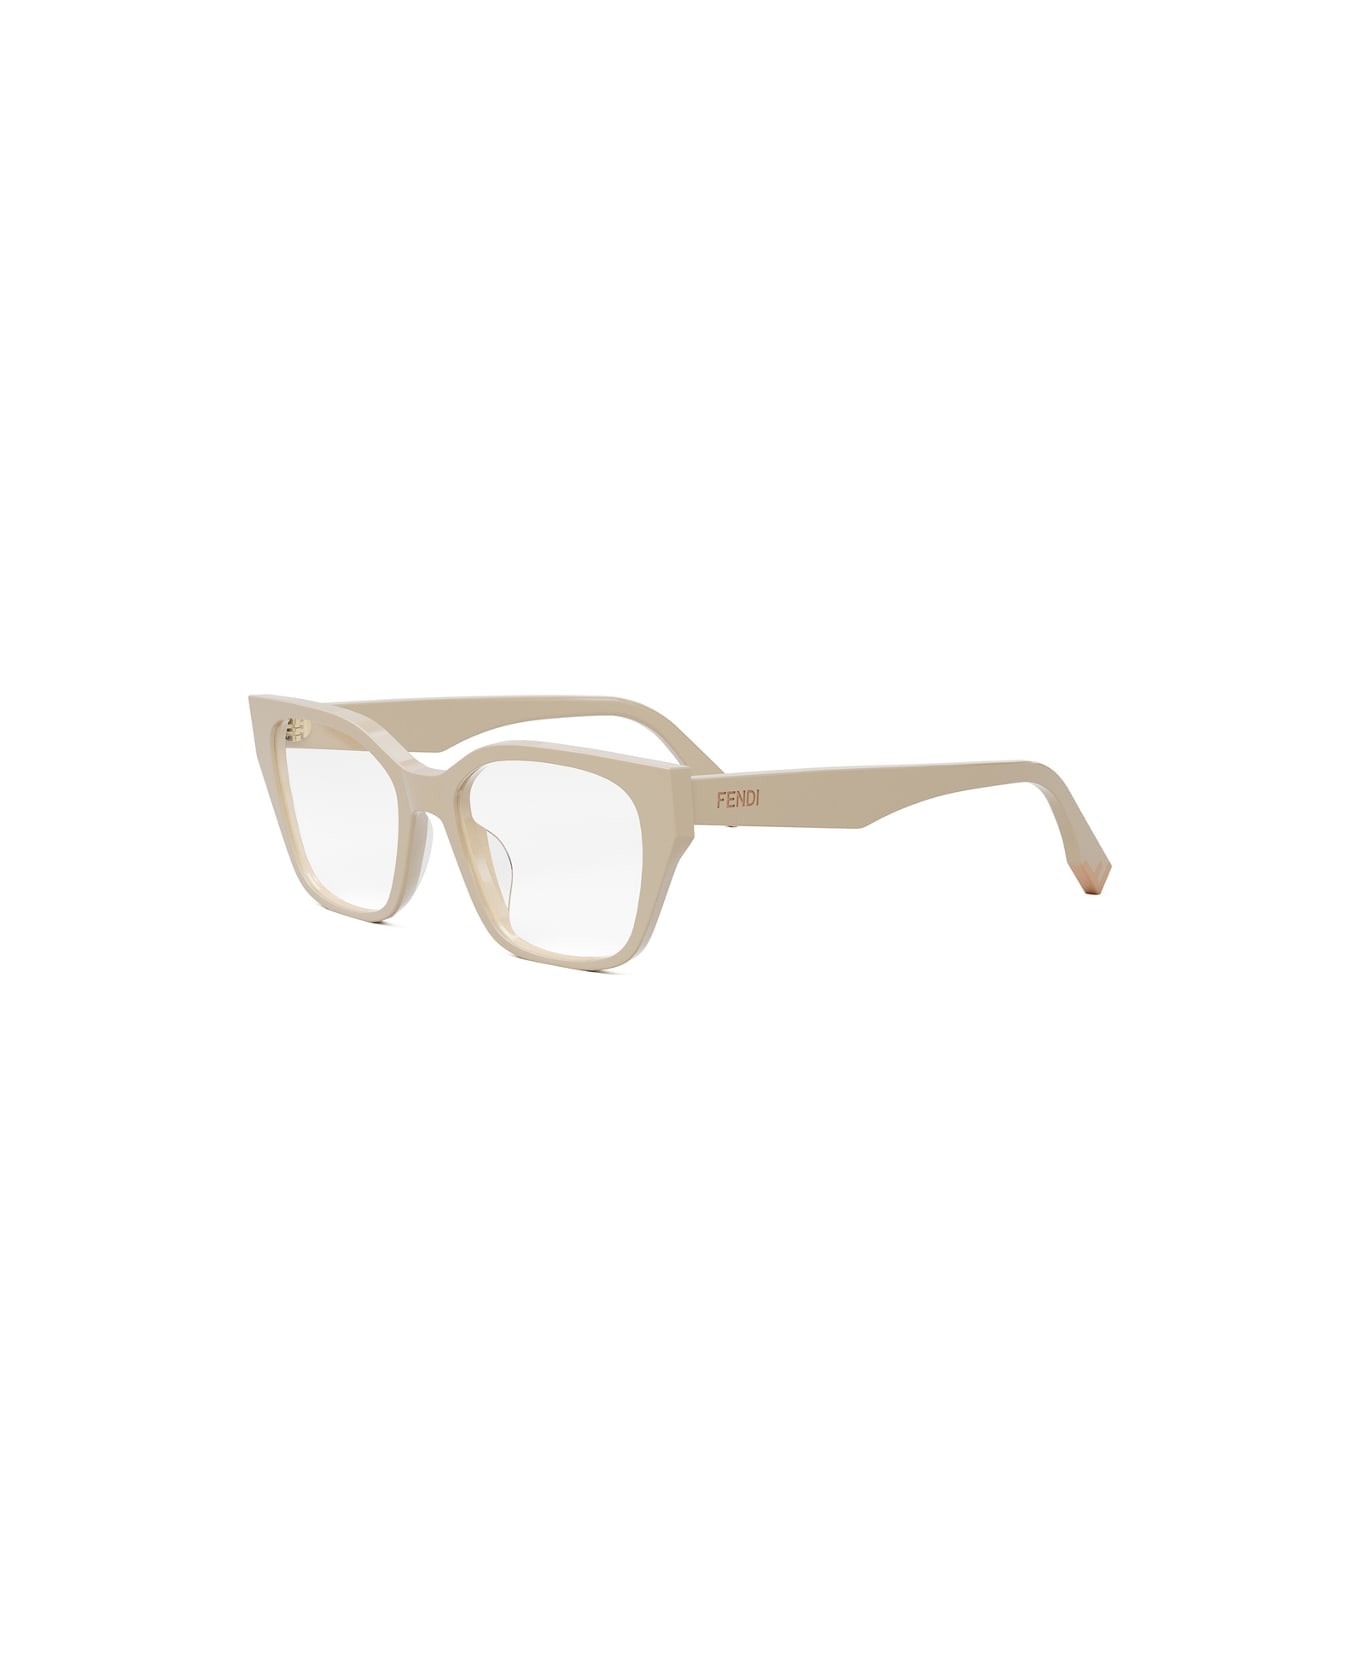 Fendi Eyewear FE50001i 057 Glasses - Panna